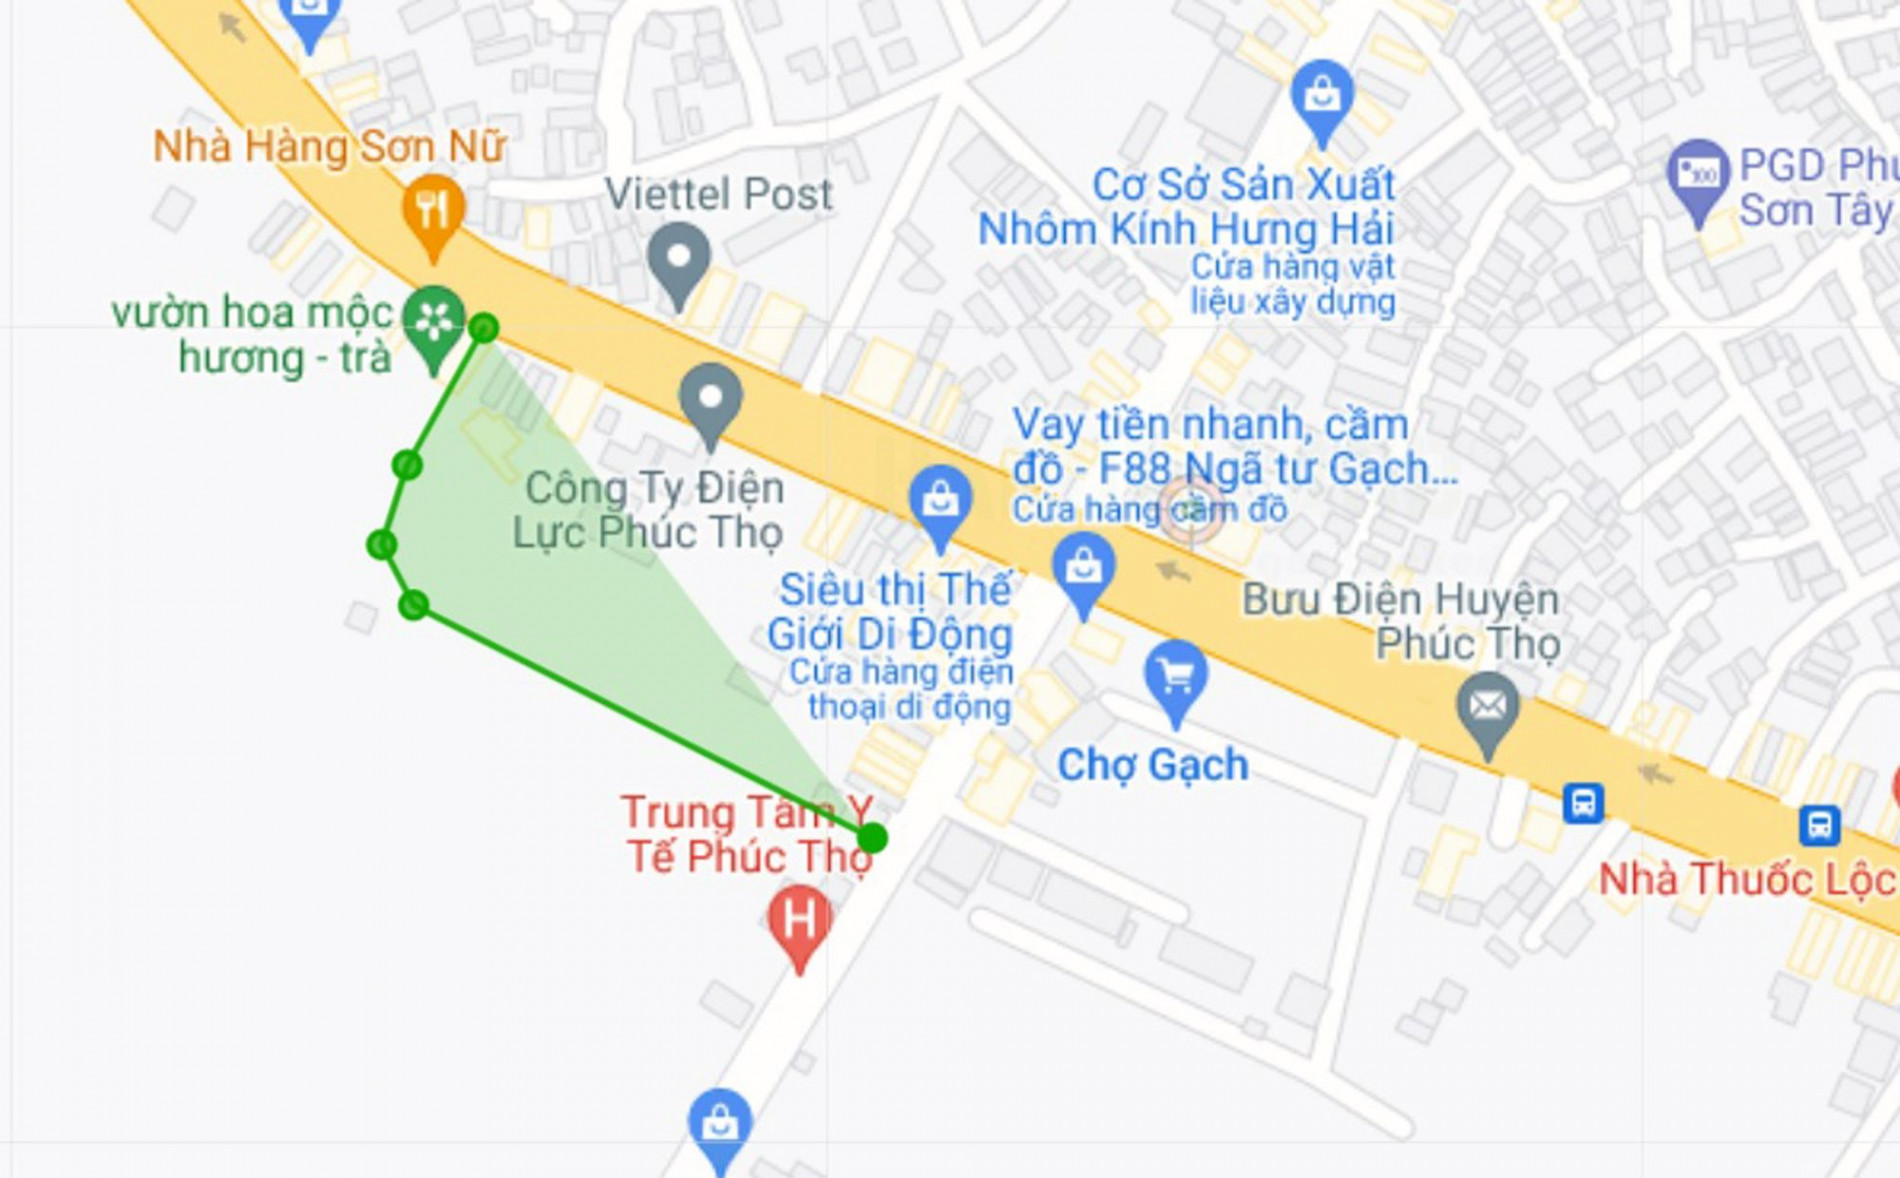 Đường sẽ mở theo quy hoạch ở thị trấn Phúc Thọ, Phúc Thọ, Hà Nội (phần 1)